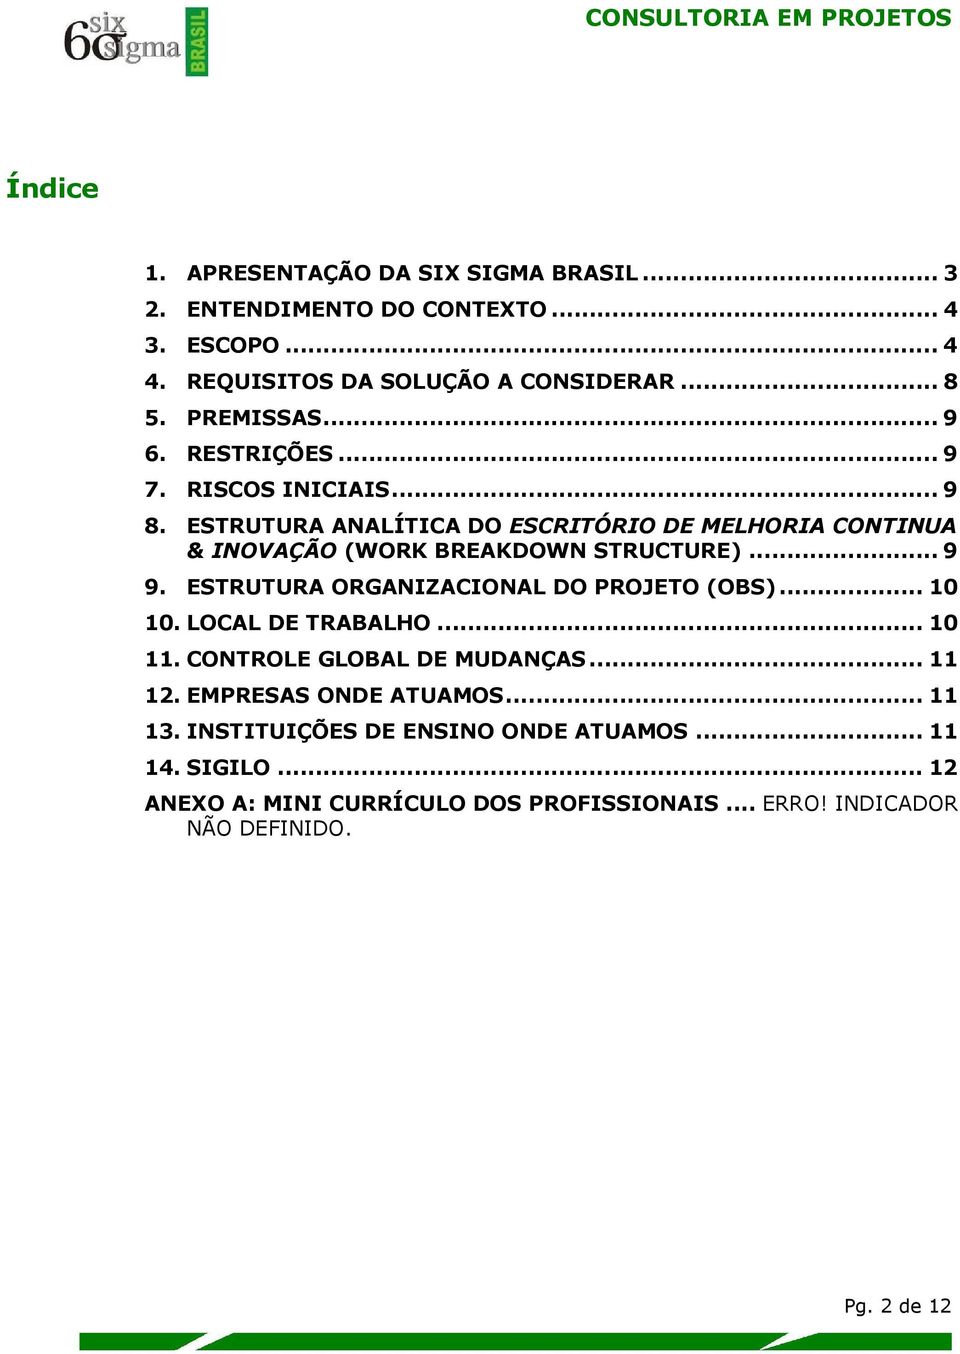 ESTRUTURA ANALÍTICA DO ESCRITÓRIO DE MELHORIA CONTINUA & INOVAÇÃO (WORK BREAKDOWN STRUCTURE)... 9 9. ESTRUTURA ORGANIZACIONAL DO PROJETO (OBS)... 10 10.